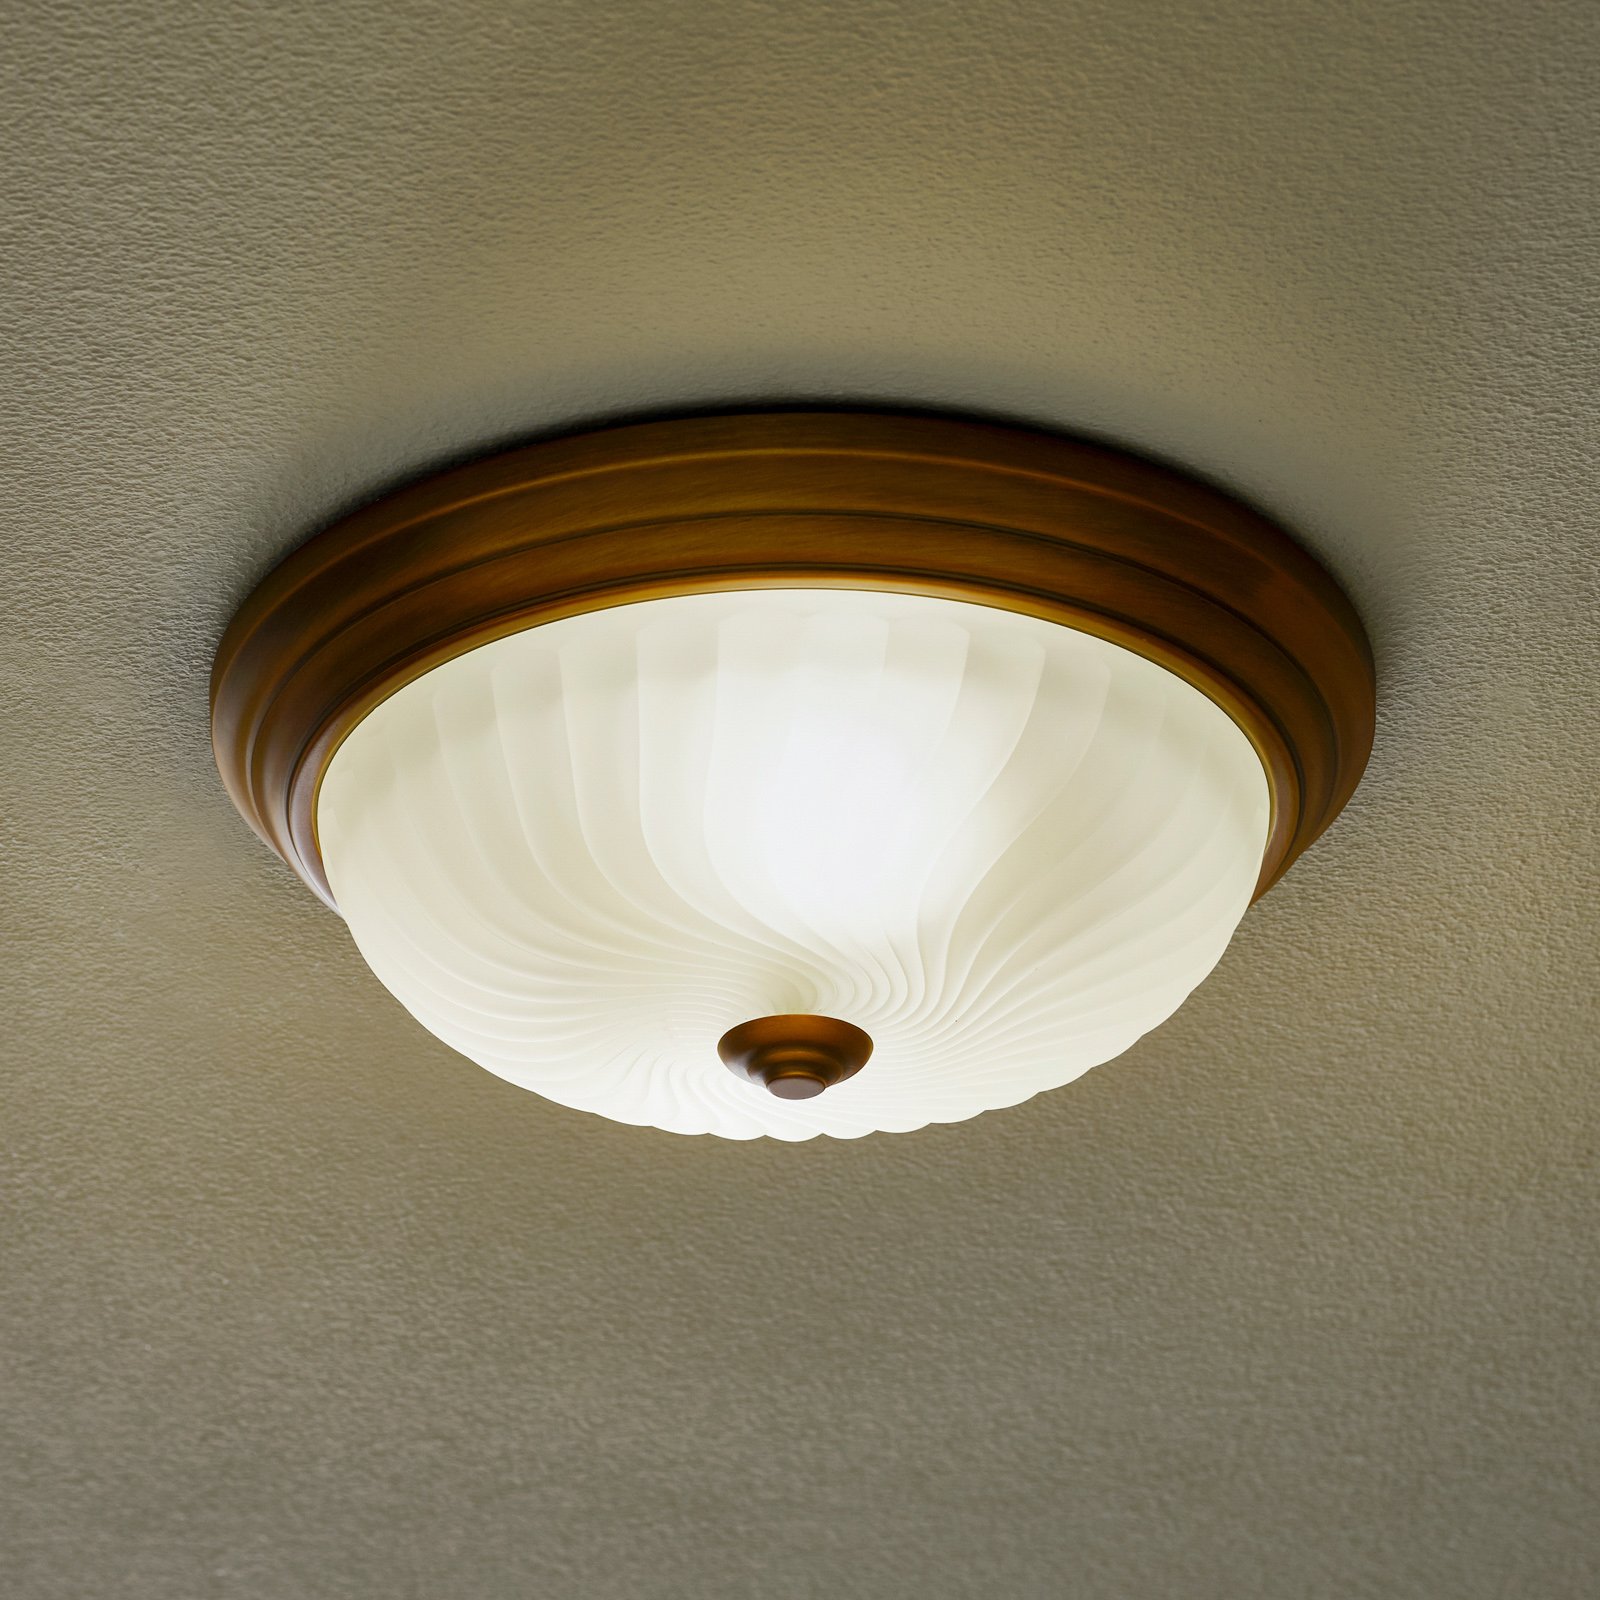 Classic Calla ceiling light